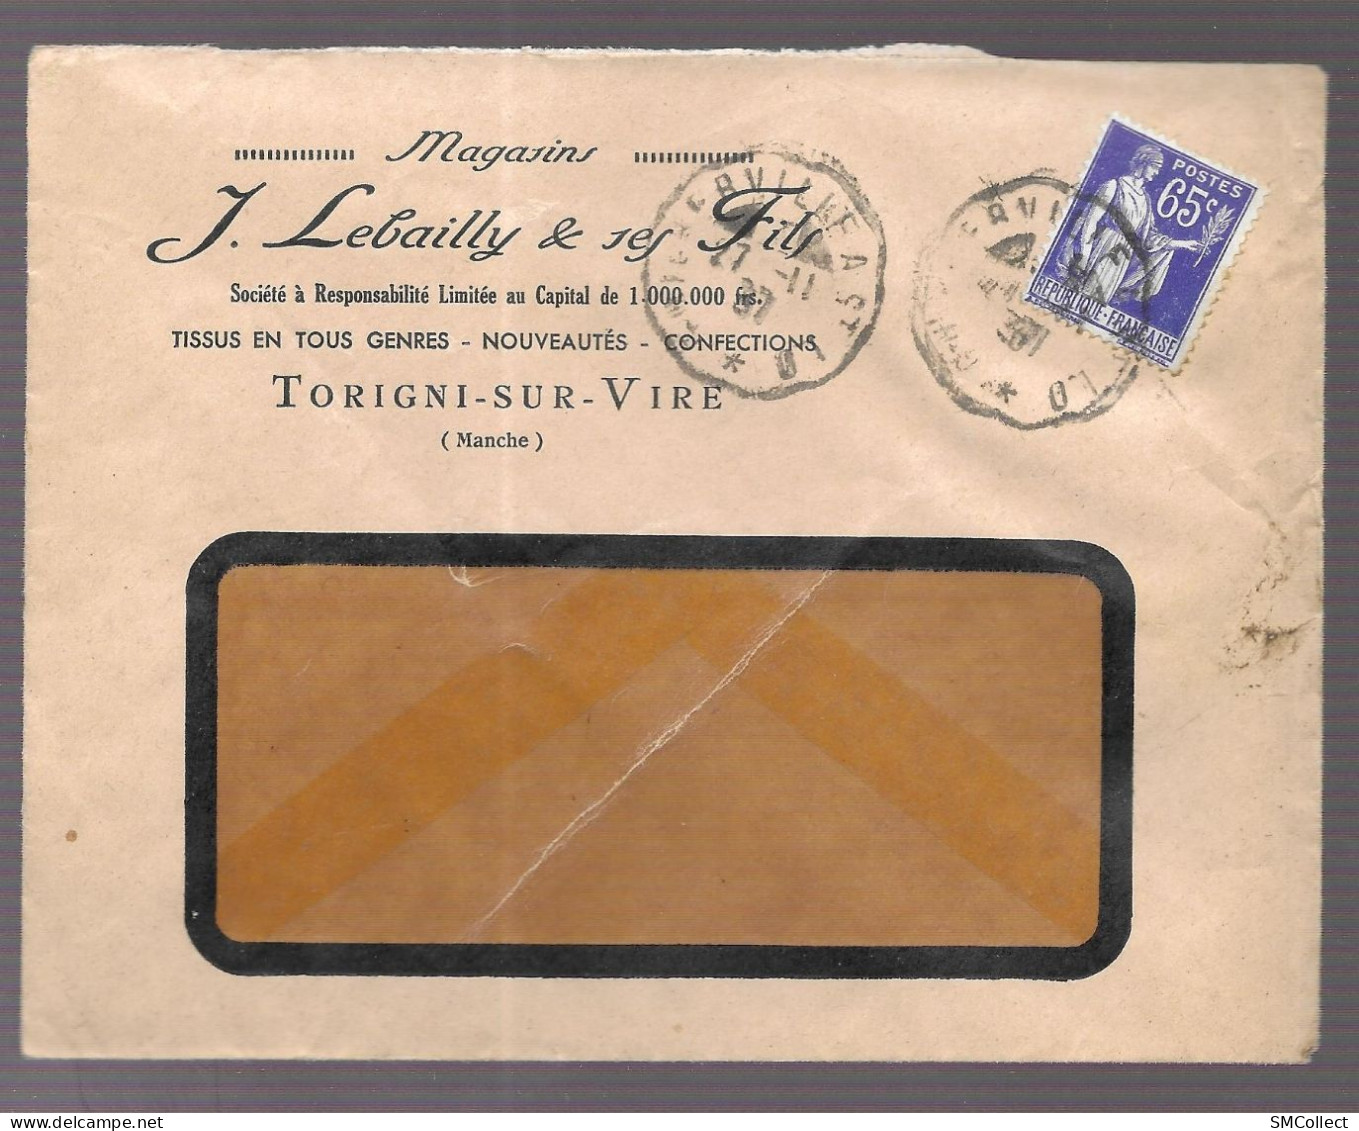 Torigni Sur Vire 1937. Enveloppe à En-tête J. Lebailly & Ses Fils - 1921-1960: Moderne